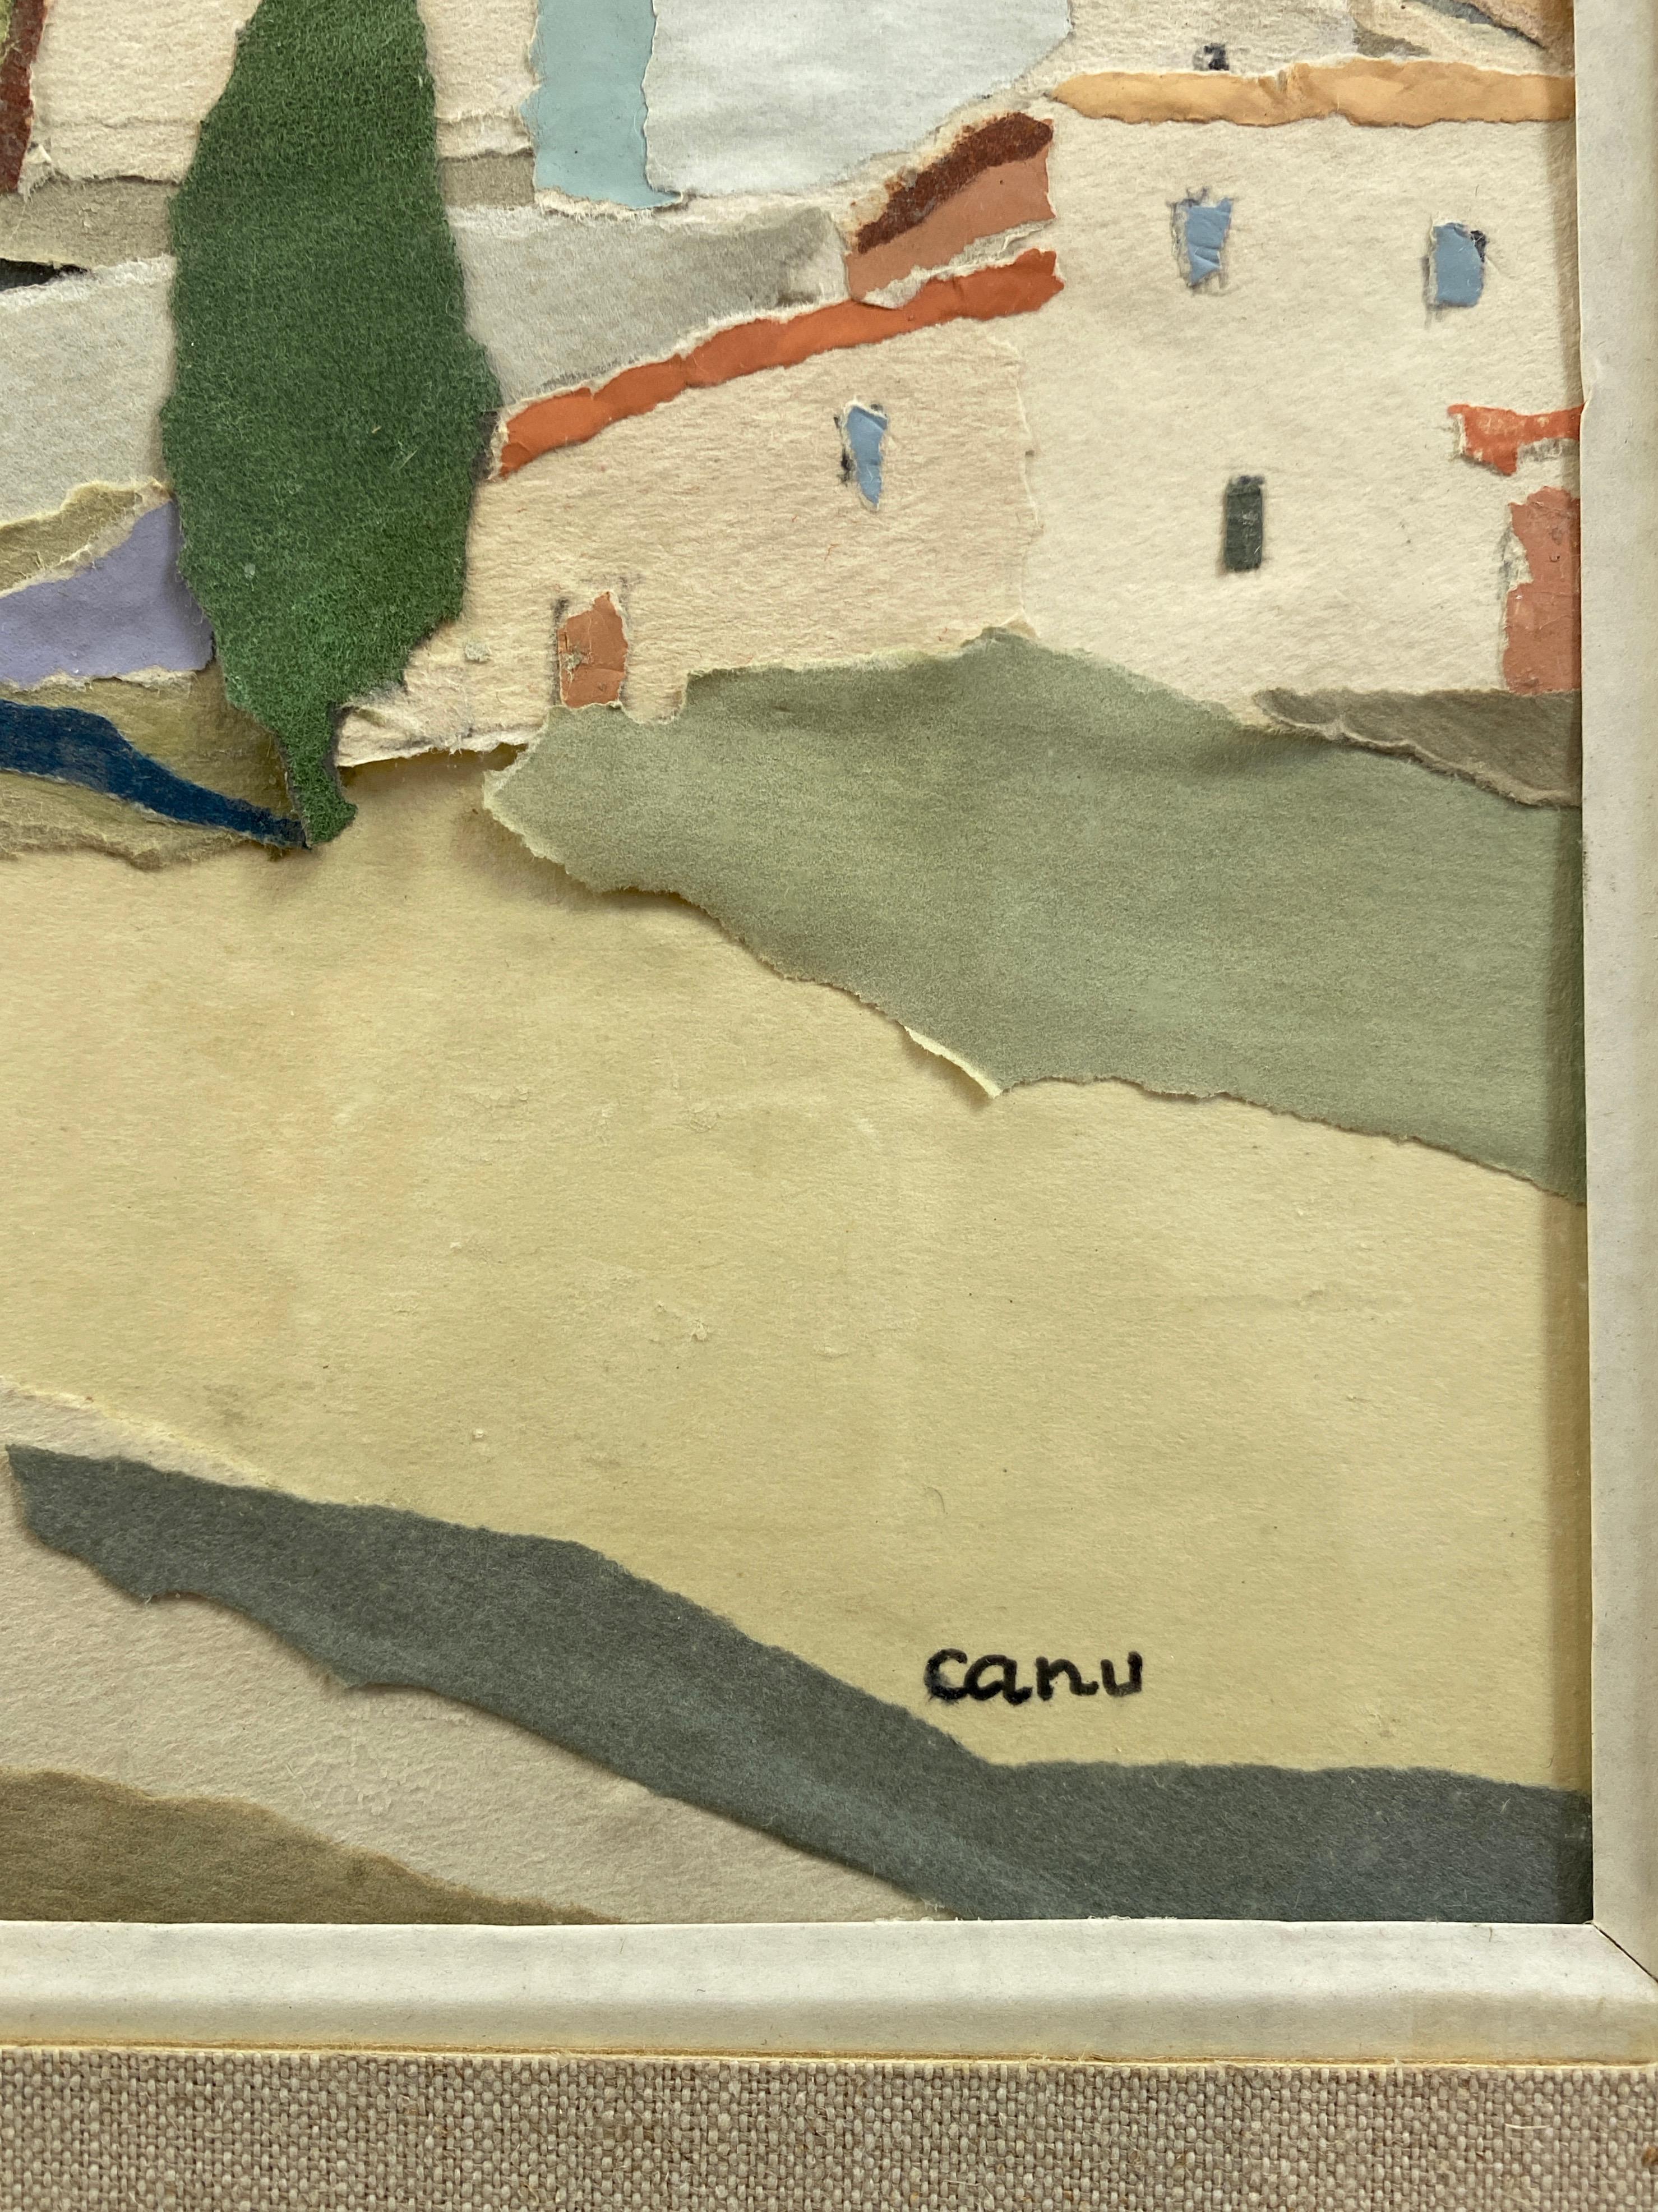 Paper Yvonne Canu “Village on a Hill”, Expressionist Papier-Déchiré Landscape, 1970s